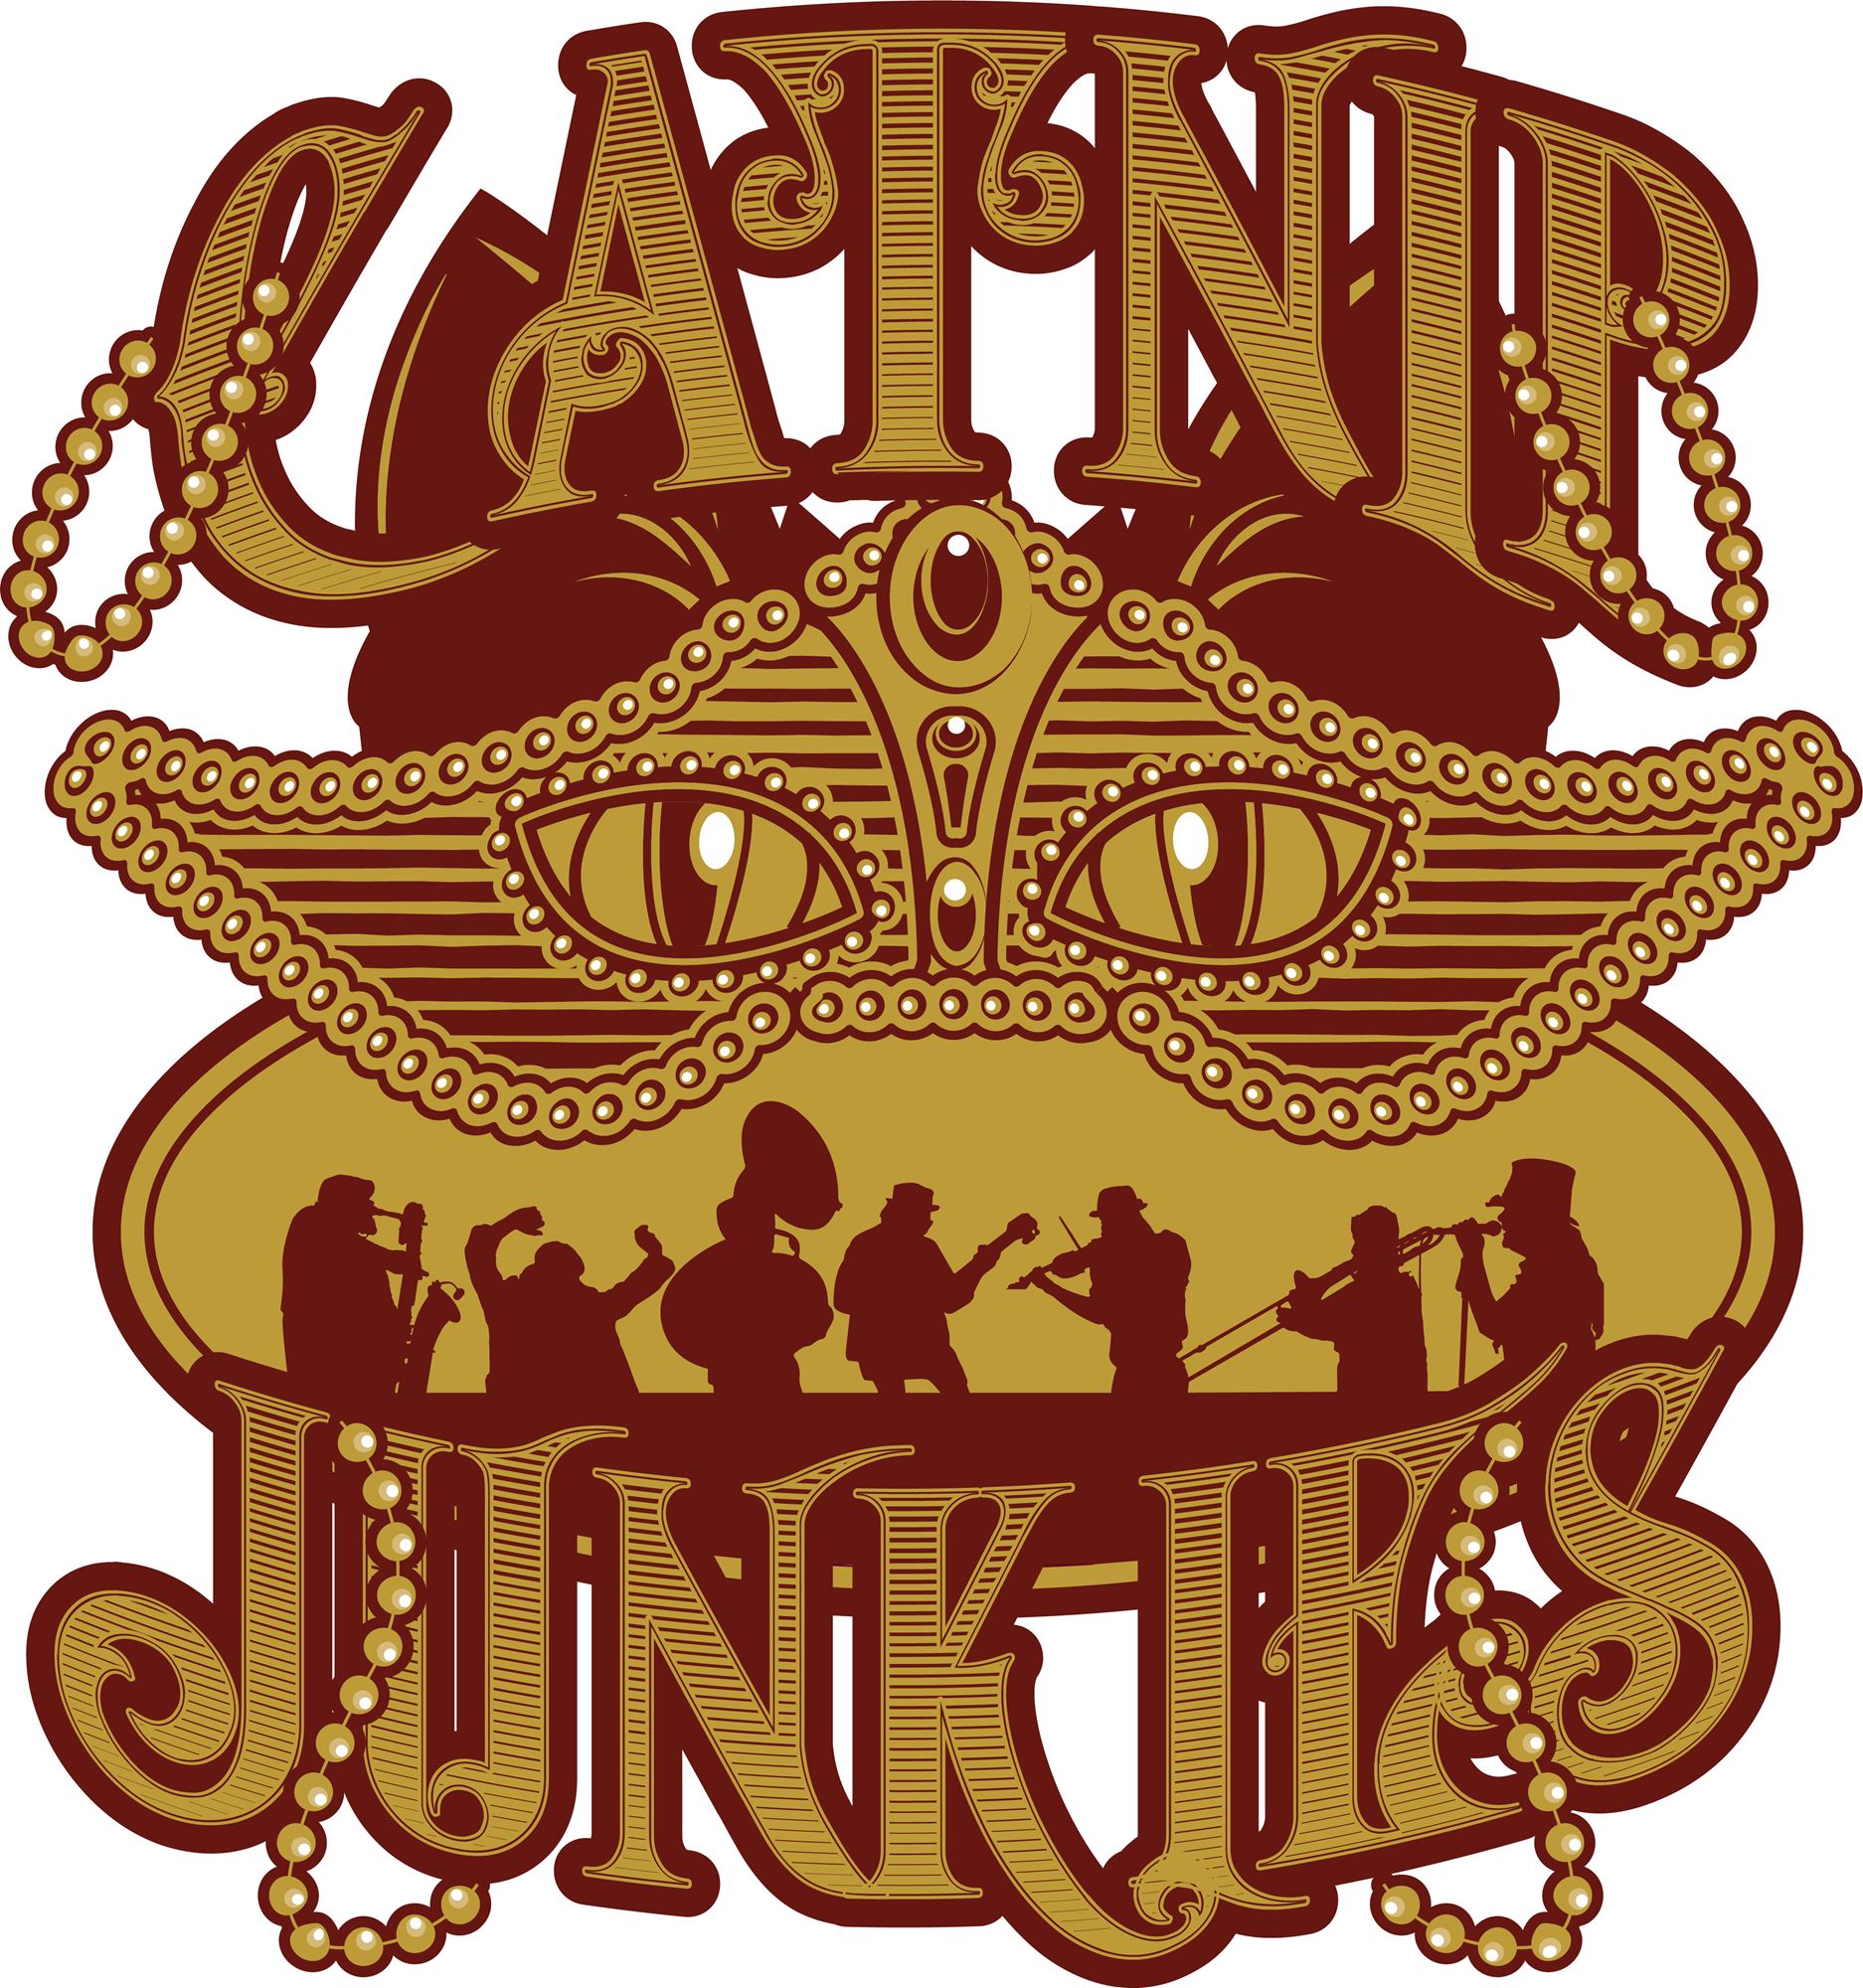 The Catnip Junkies